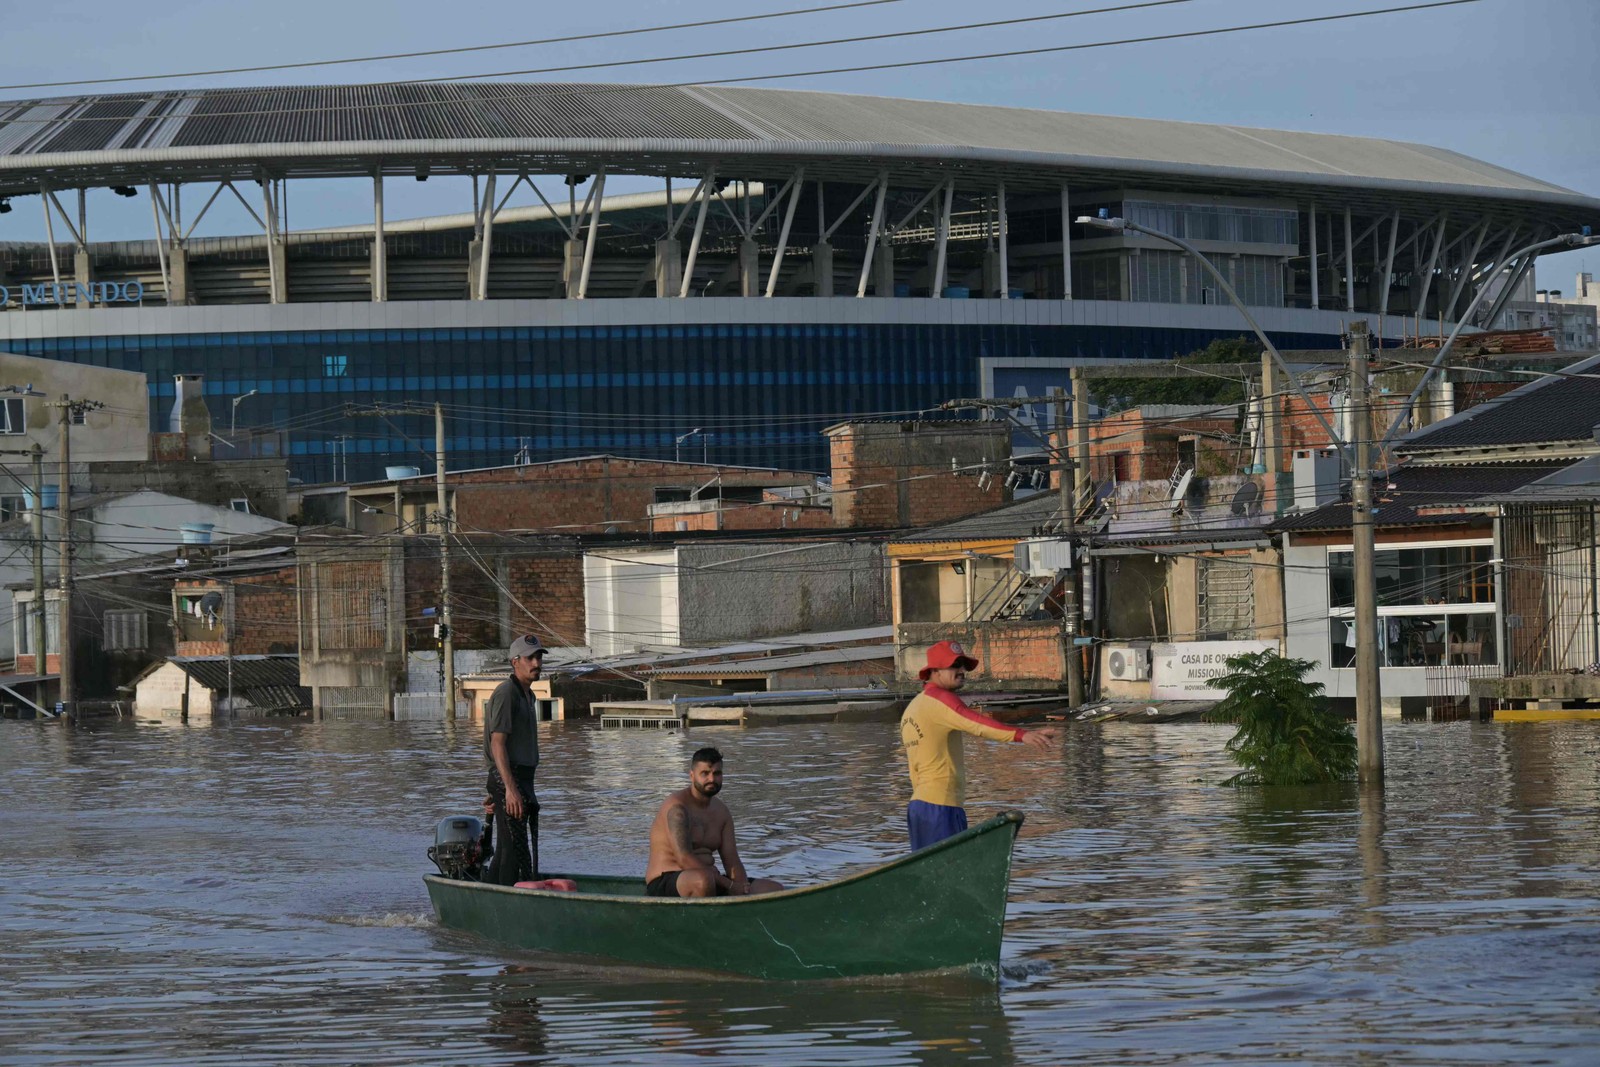 Equipes de resgate navegam de barco em busca de pessoas no bairro Humaitá, em Porto Alegre, Rio Grande do Sul — Foto: NELSON ALMEIDA / AFP